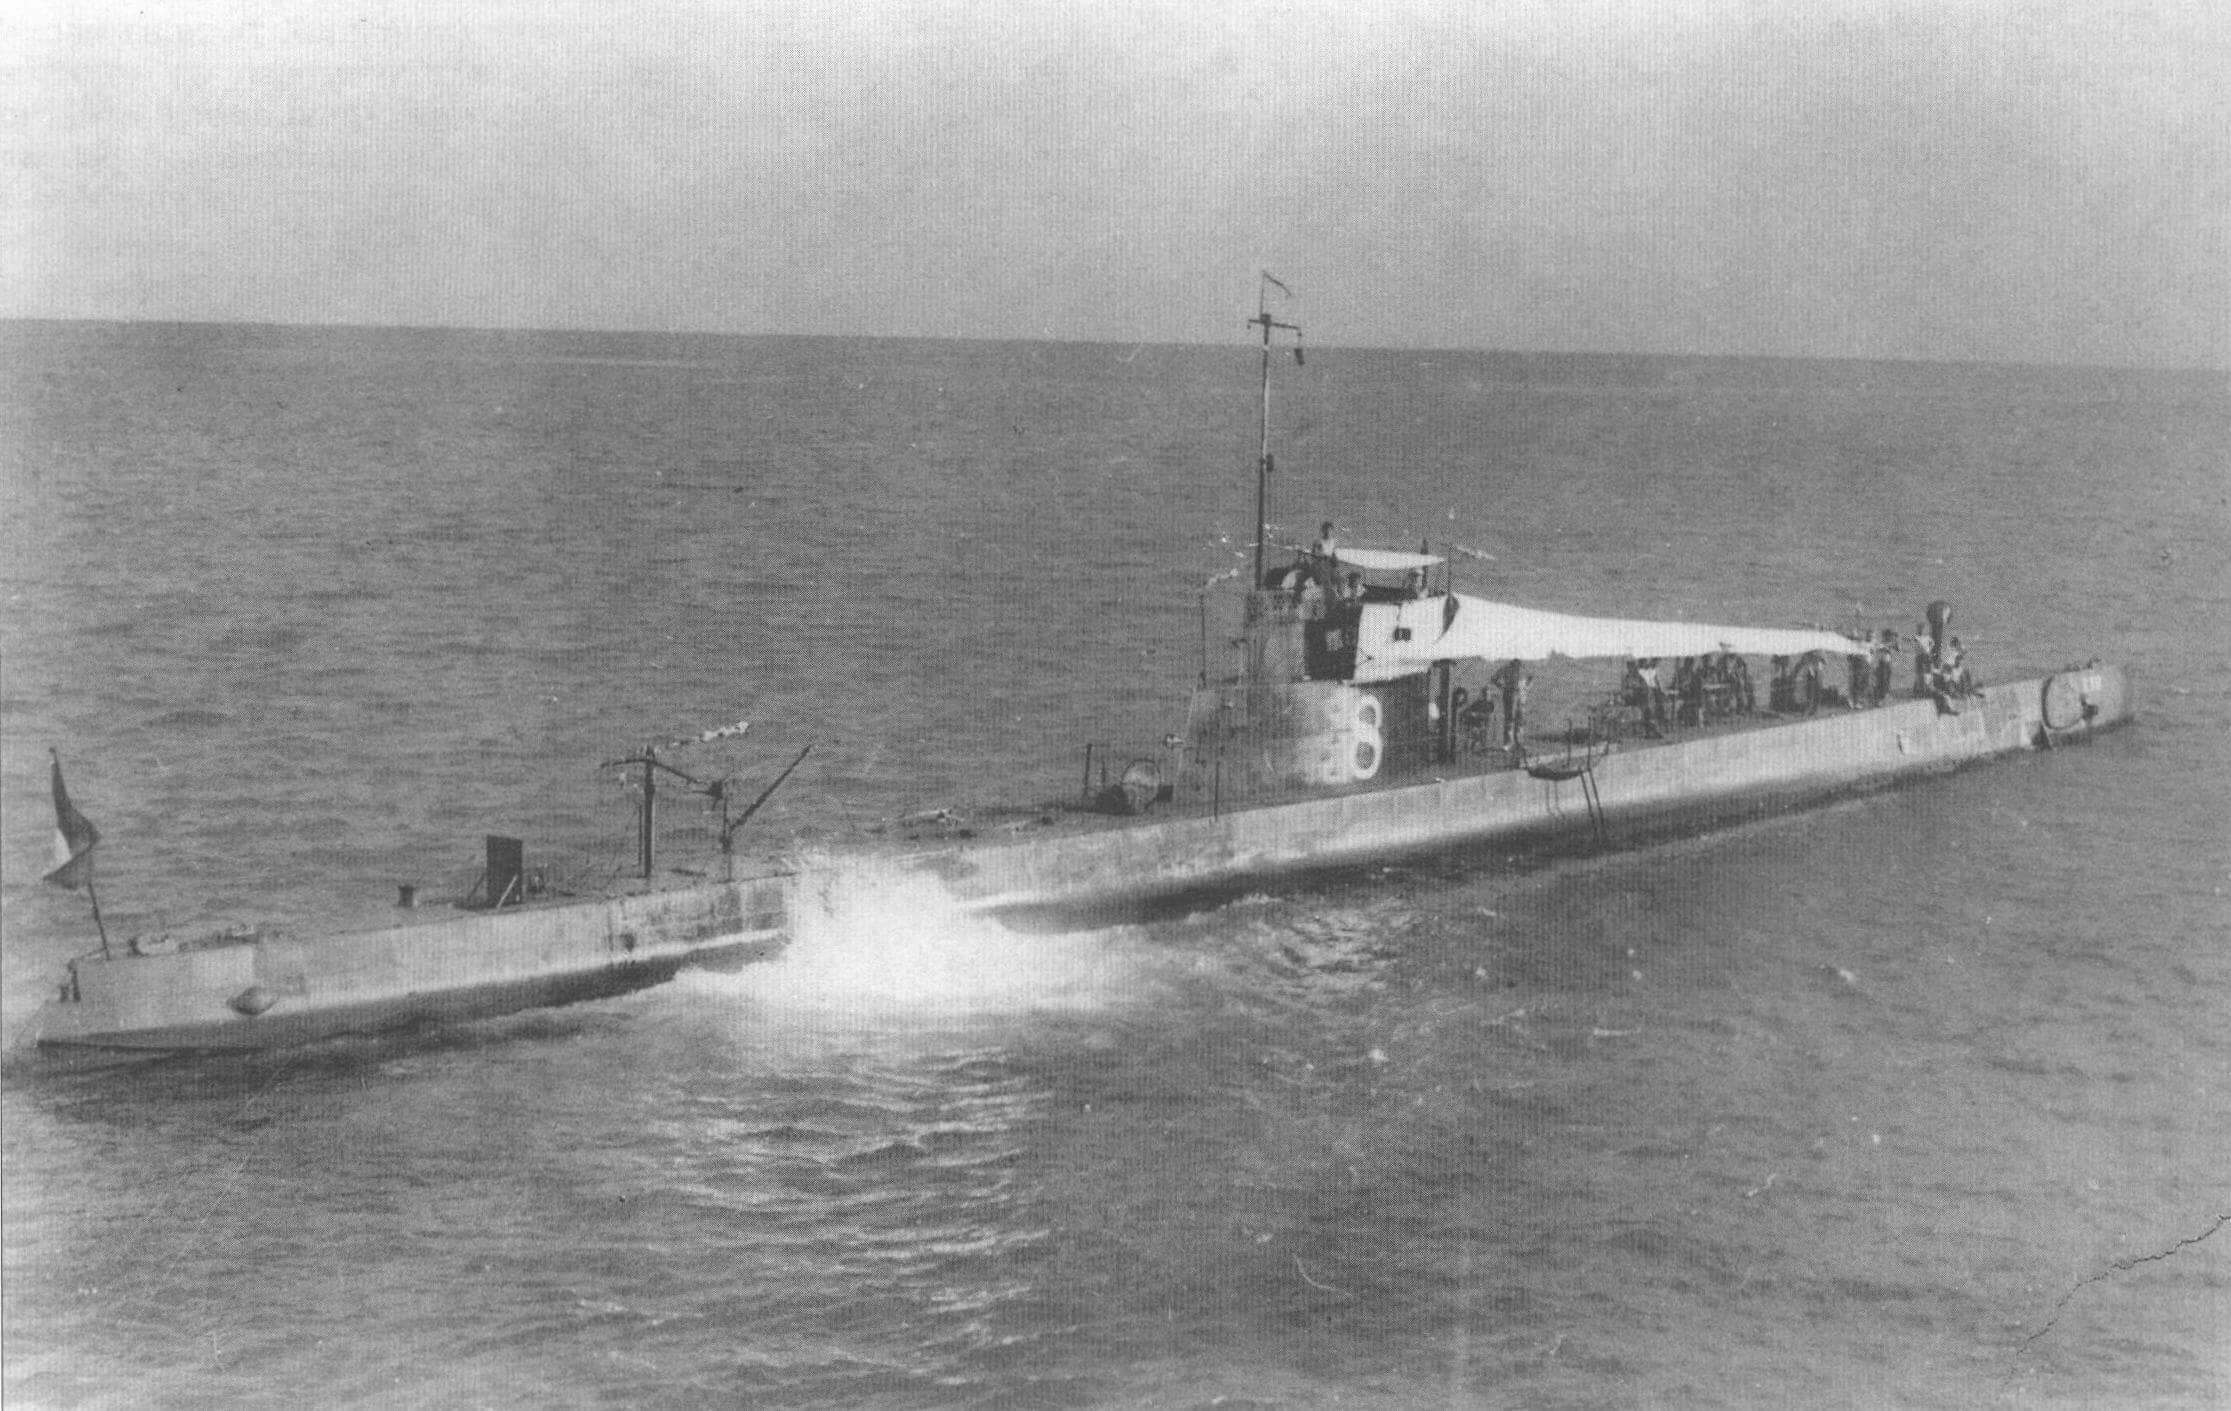 Подводная лодка «К-III» (Голландия, 1922 г.). Строилась на верфи «Де Шельде». Тип конструкции - полуторакорпусный. Водоизмещение надводное/подводное 575/710 т. Размеры: длина 64,1 м, ширина 5,6 м, осадка 3,6 м. Глубина погружения - до 40 м. Двигатель: два дизеля, мощность 1800 л.с. + один электромотор, мощность 630 л.с., скорость надводная/подводная 15/8 уз. Вооружение: четыре 450-мм торпедных аппарата (два в носу и два в корме, восемь торпед), одно 88-мм зенитное орудие, один 12,7-мм пулемет. Экипаж: 31 чел. В 1922-1923 годах построены три единицы, «К-VIII» - «К-Х». «К-Х» затоплена командой в Сурабайе в марте 1942 г., две других ушли в Австралию, где сданы на слом.